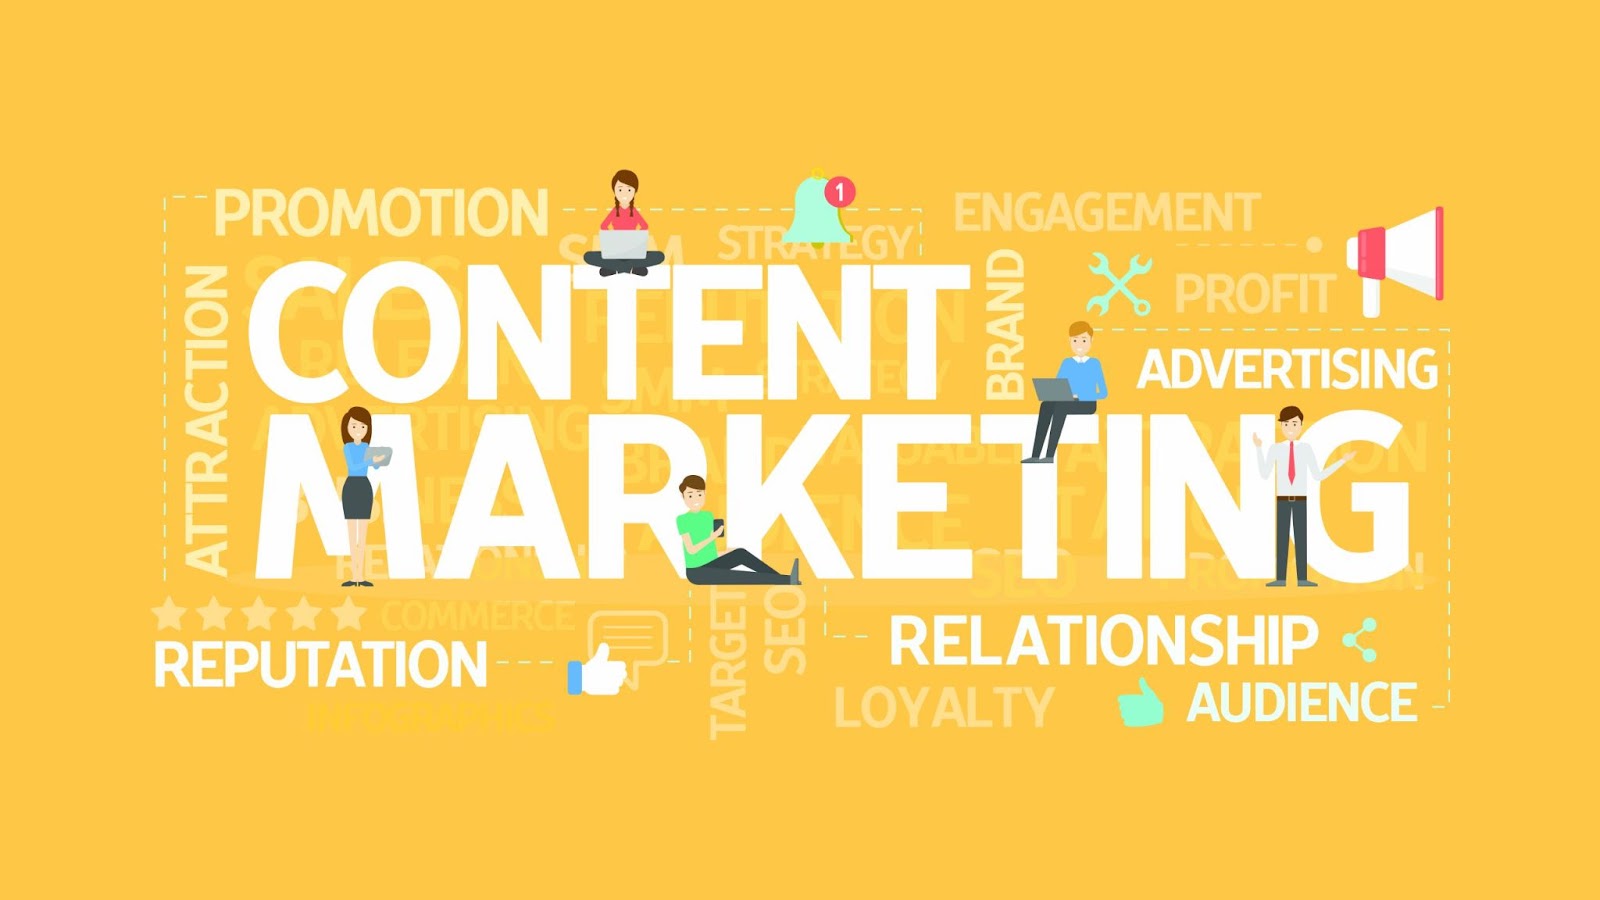 Content Marketing mang nhiều lợi ích thiết thực cho các công ty/doanh nghiệp